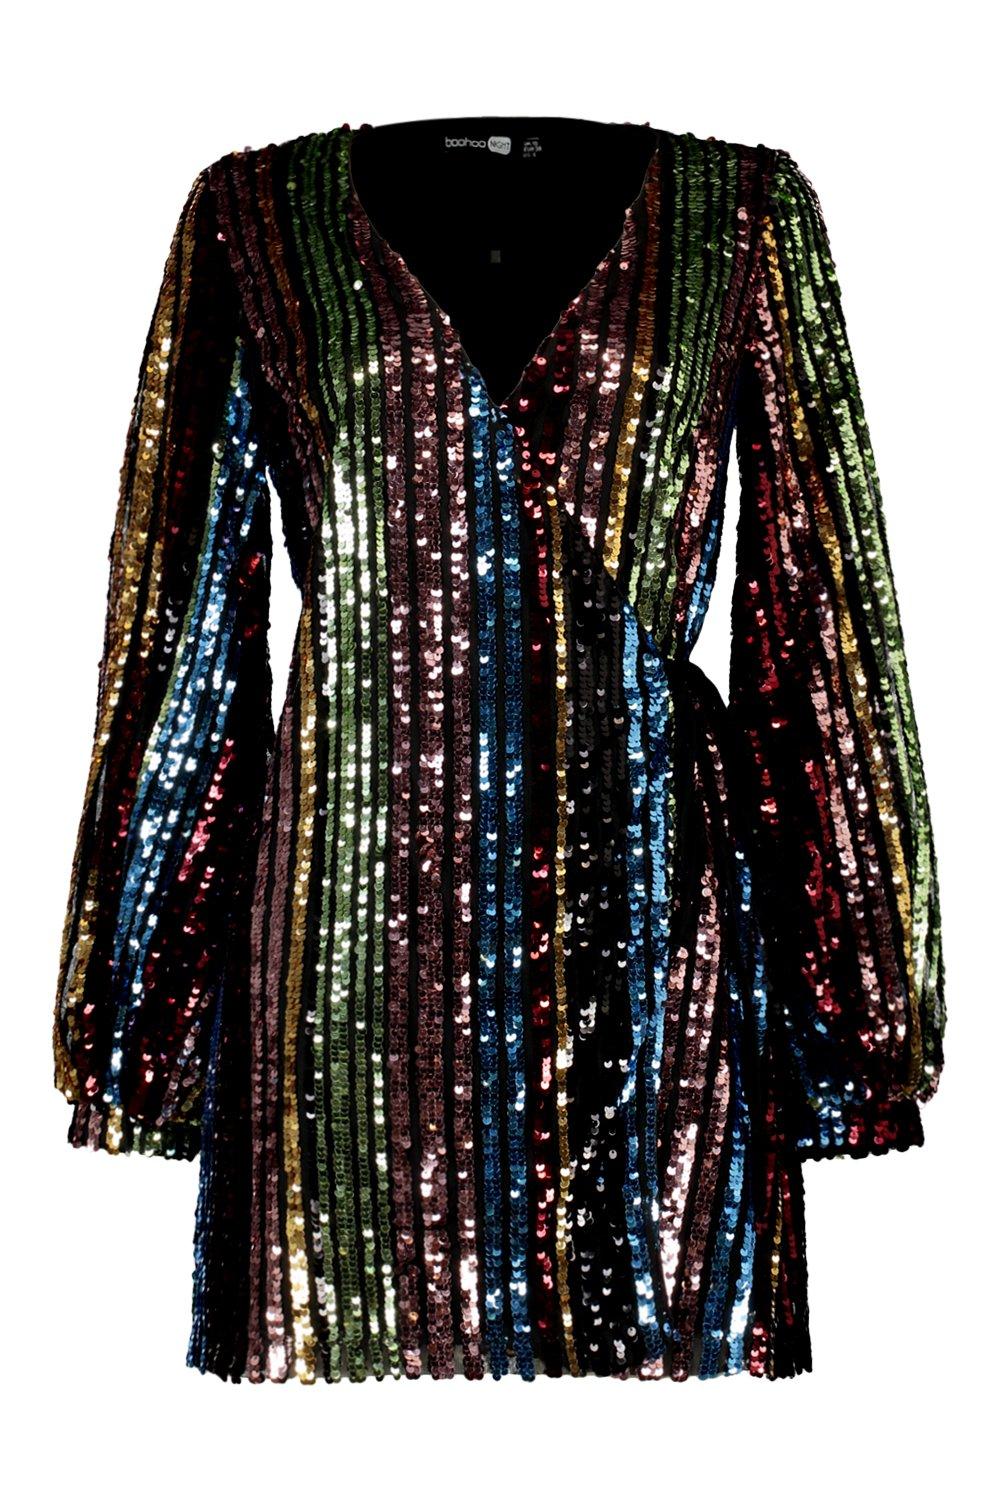 boohoo rainbow sequin dress